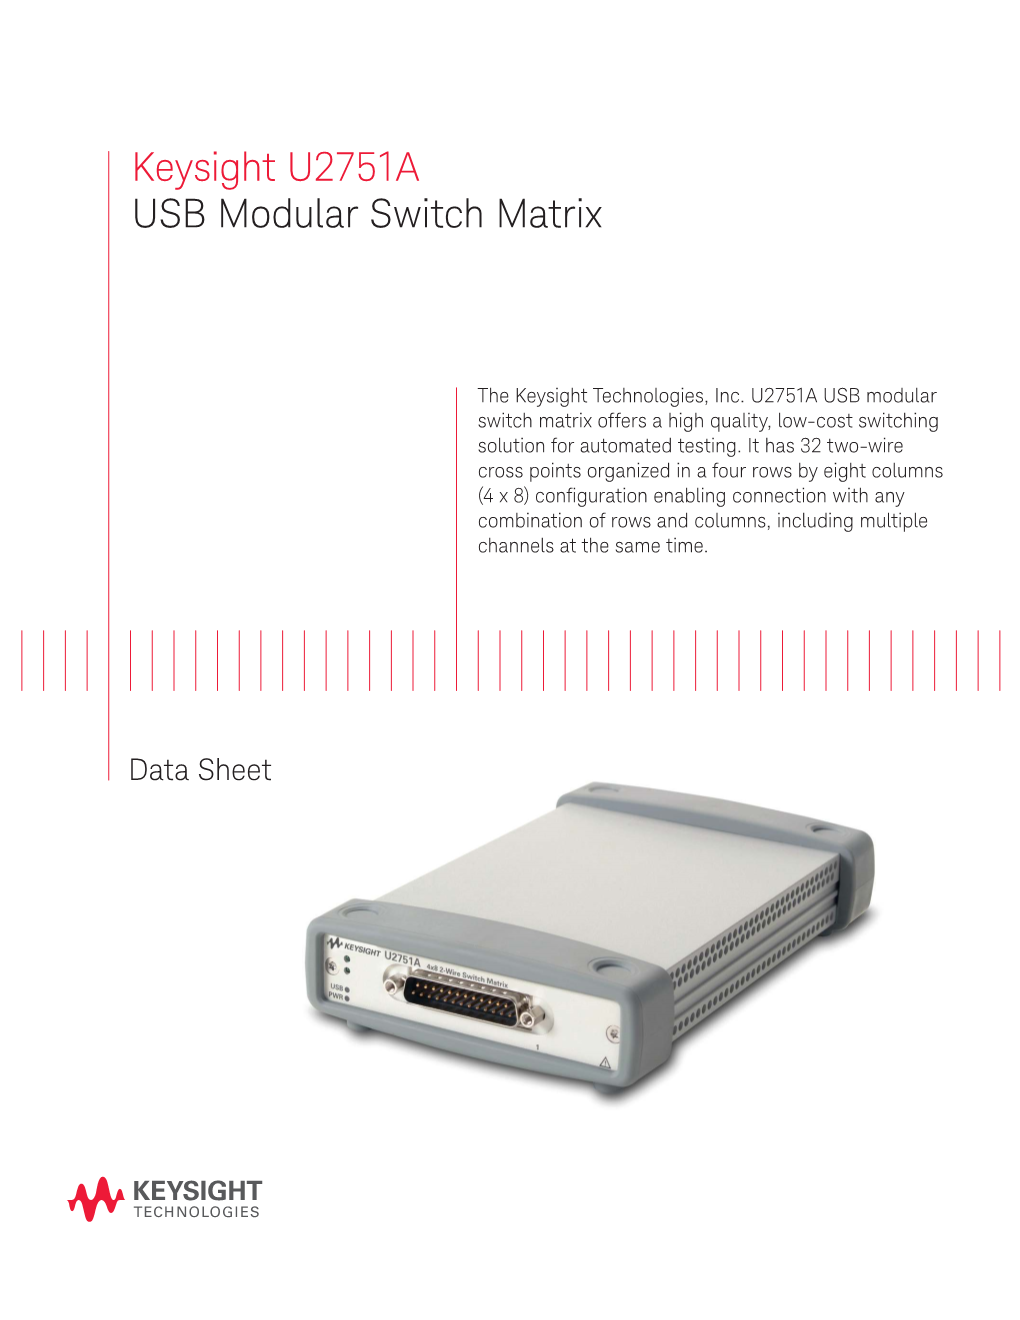 Keysight U2751A USB Modular Switch Matrix